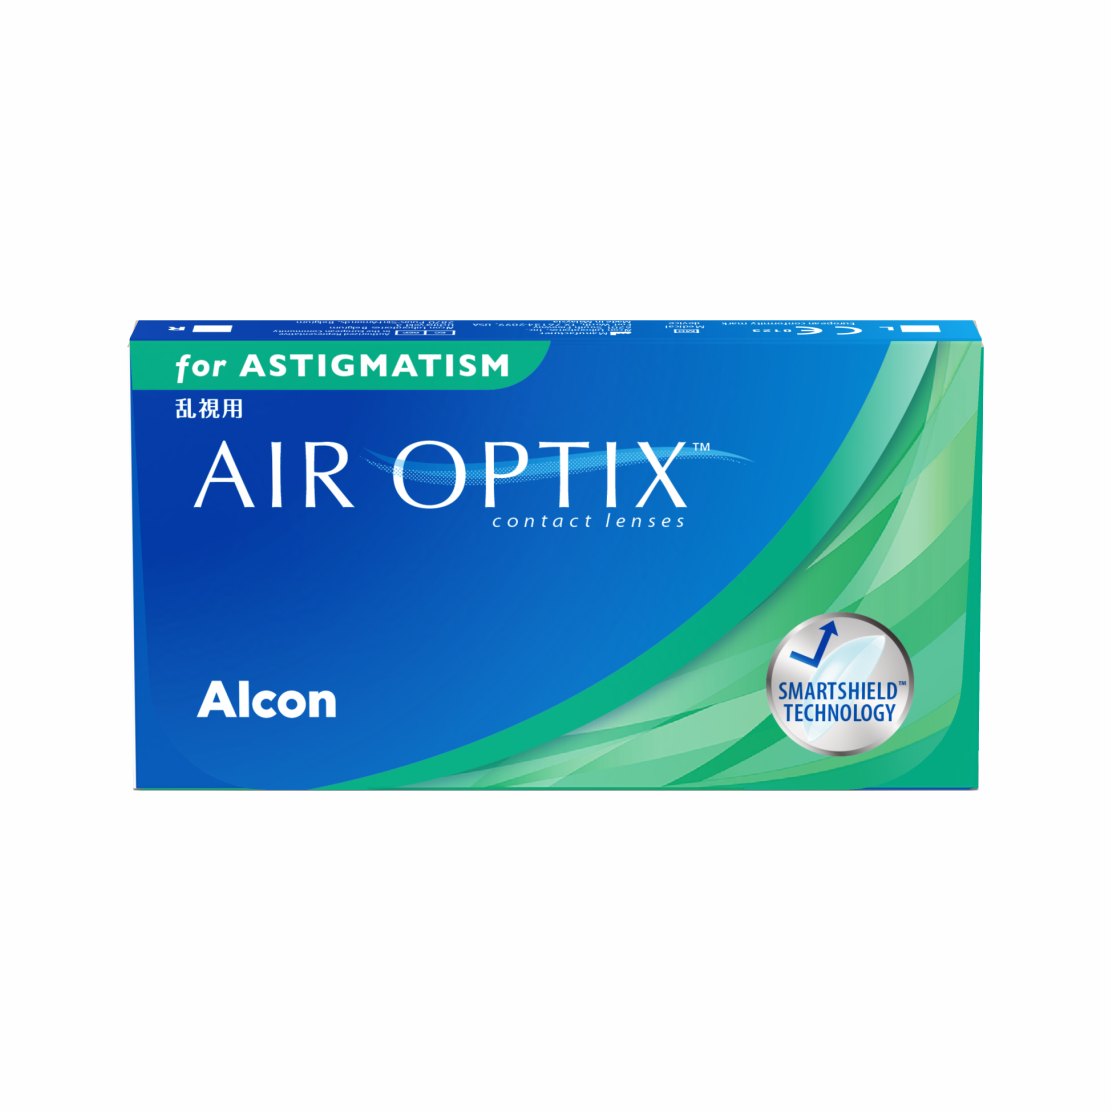 AIR OPTIX for Astigmatism, Alcon